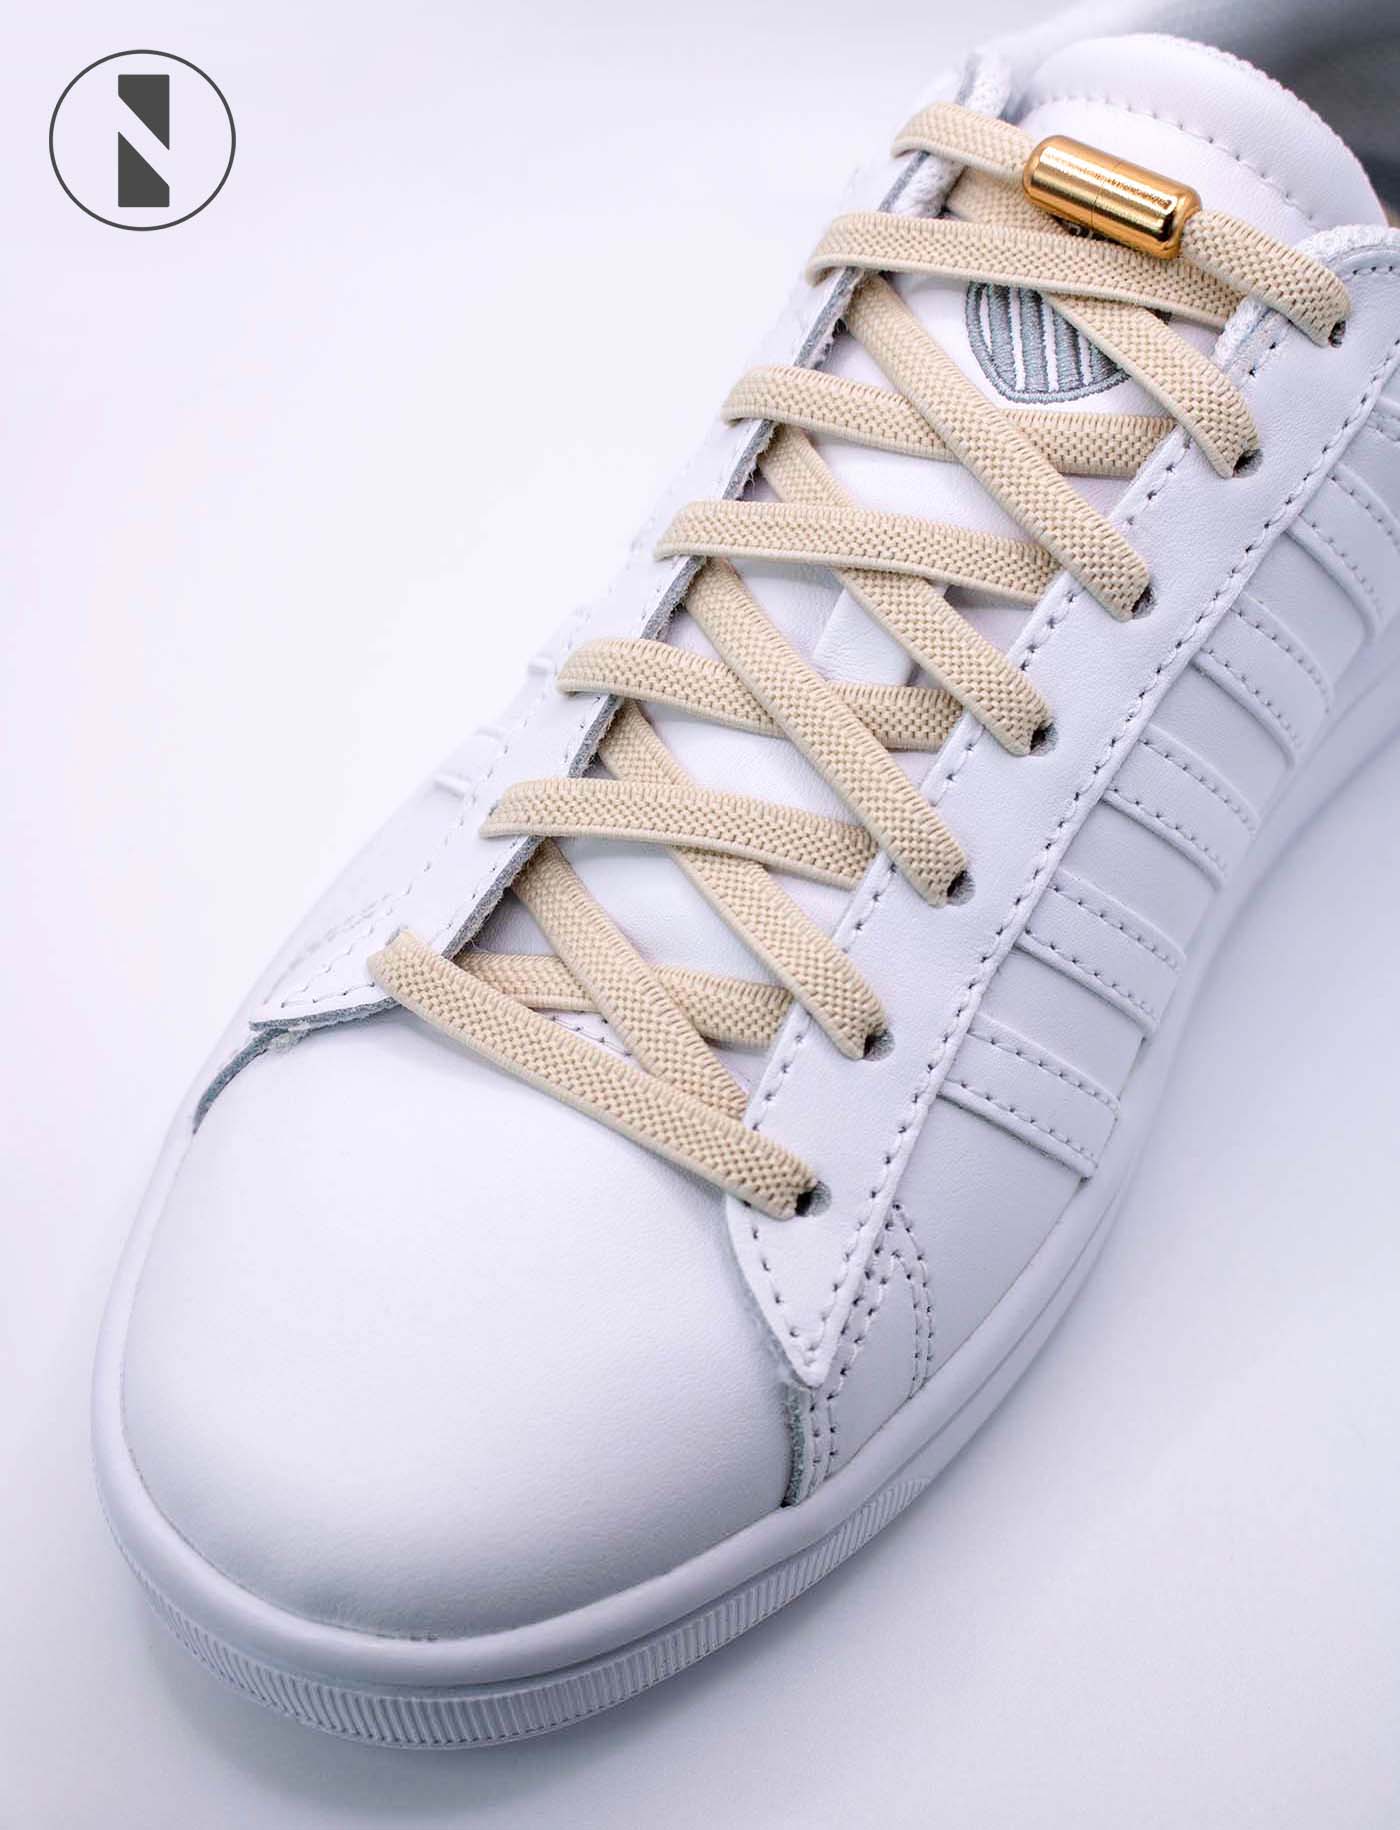 The No-Tie capsule shoelaces - The No-Tie shoelaces